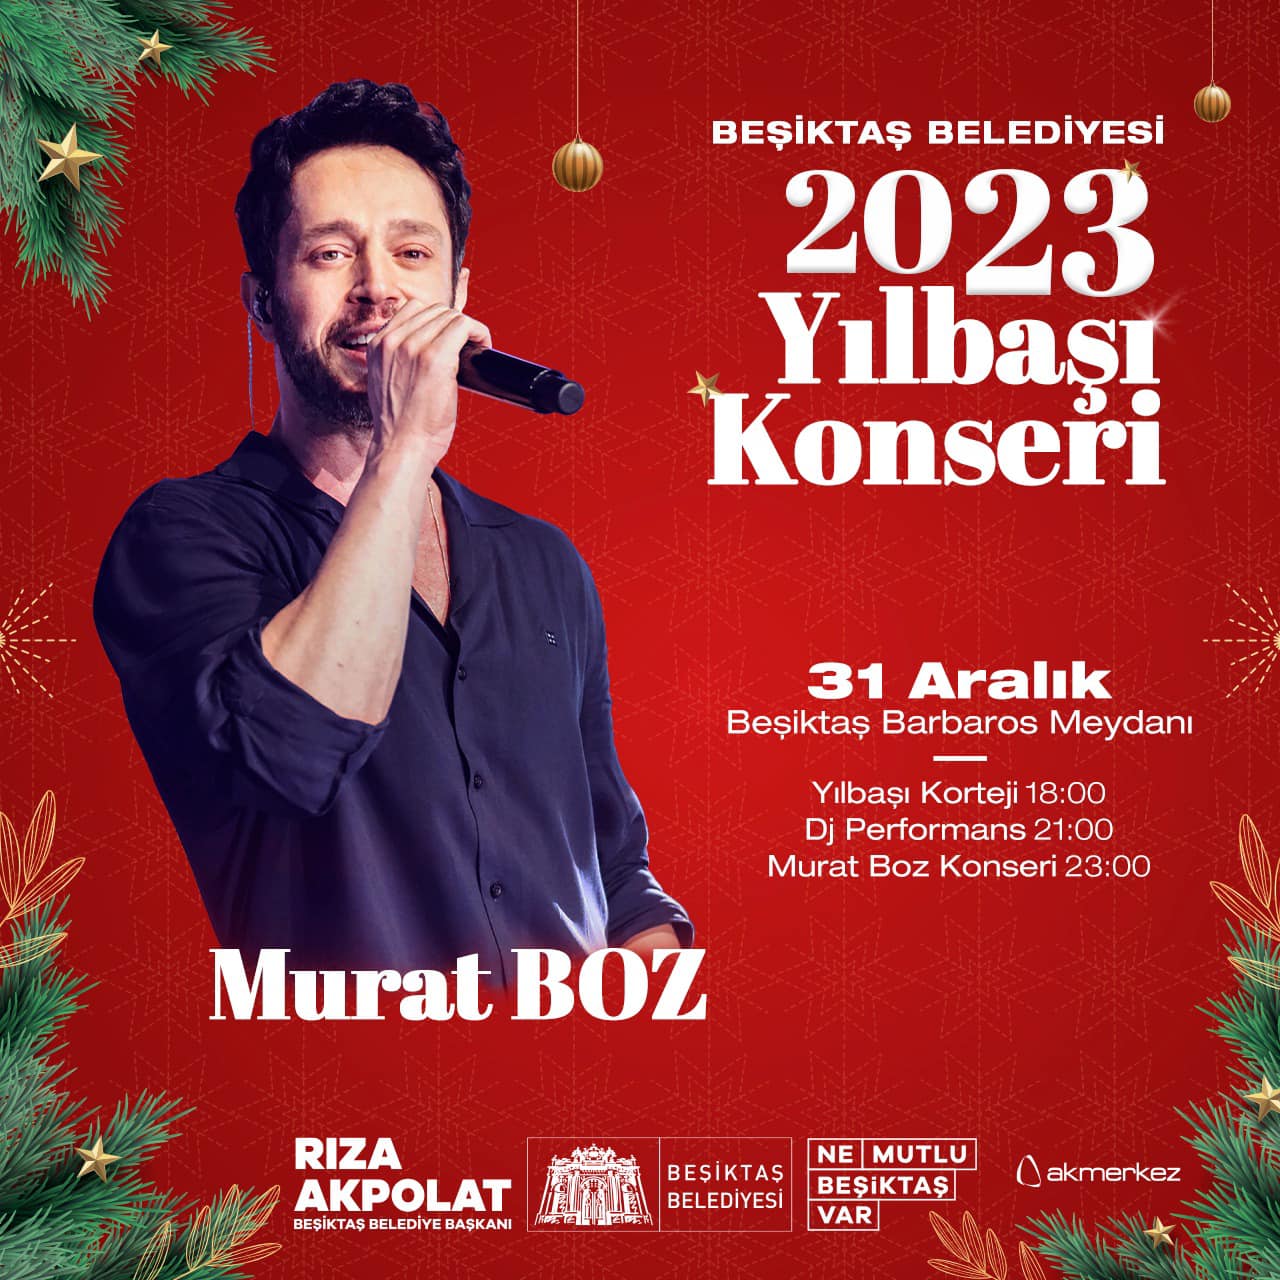 Murat Boz Beşiktaş 2023 Yılbaşı Konseri Ücretsiz